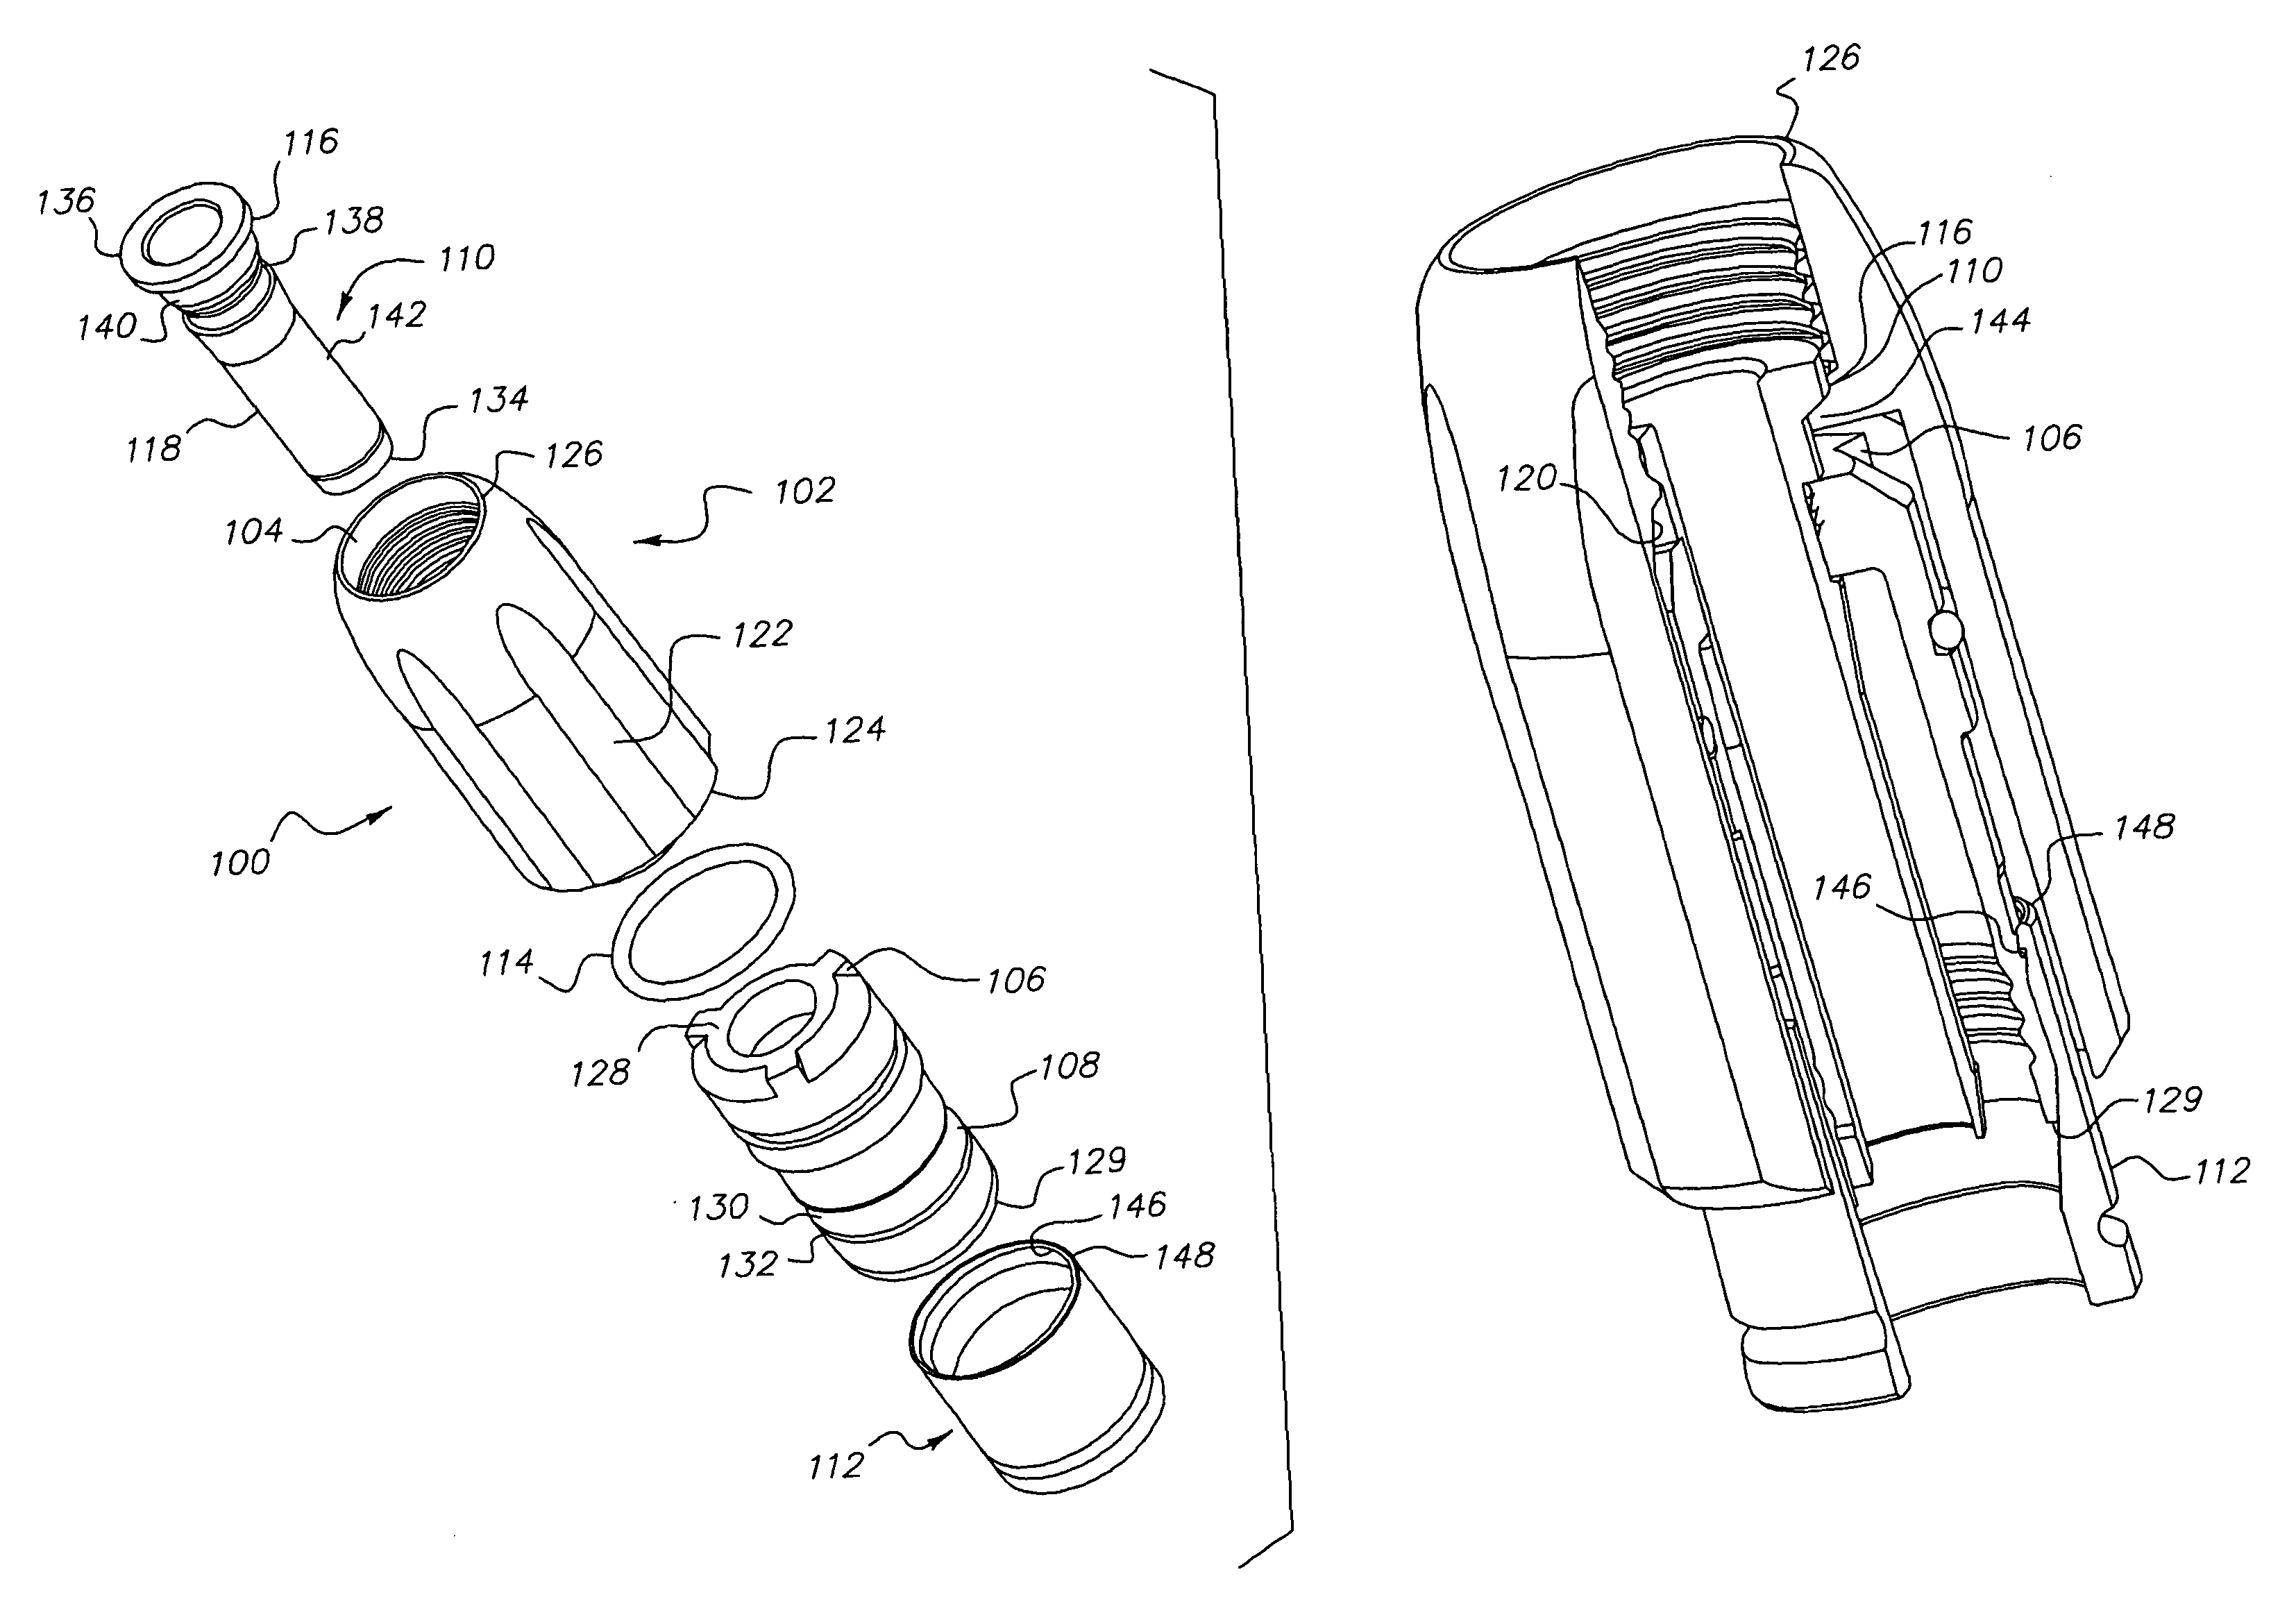 Coax connector having clutching mechanism